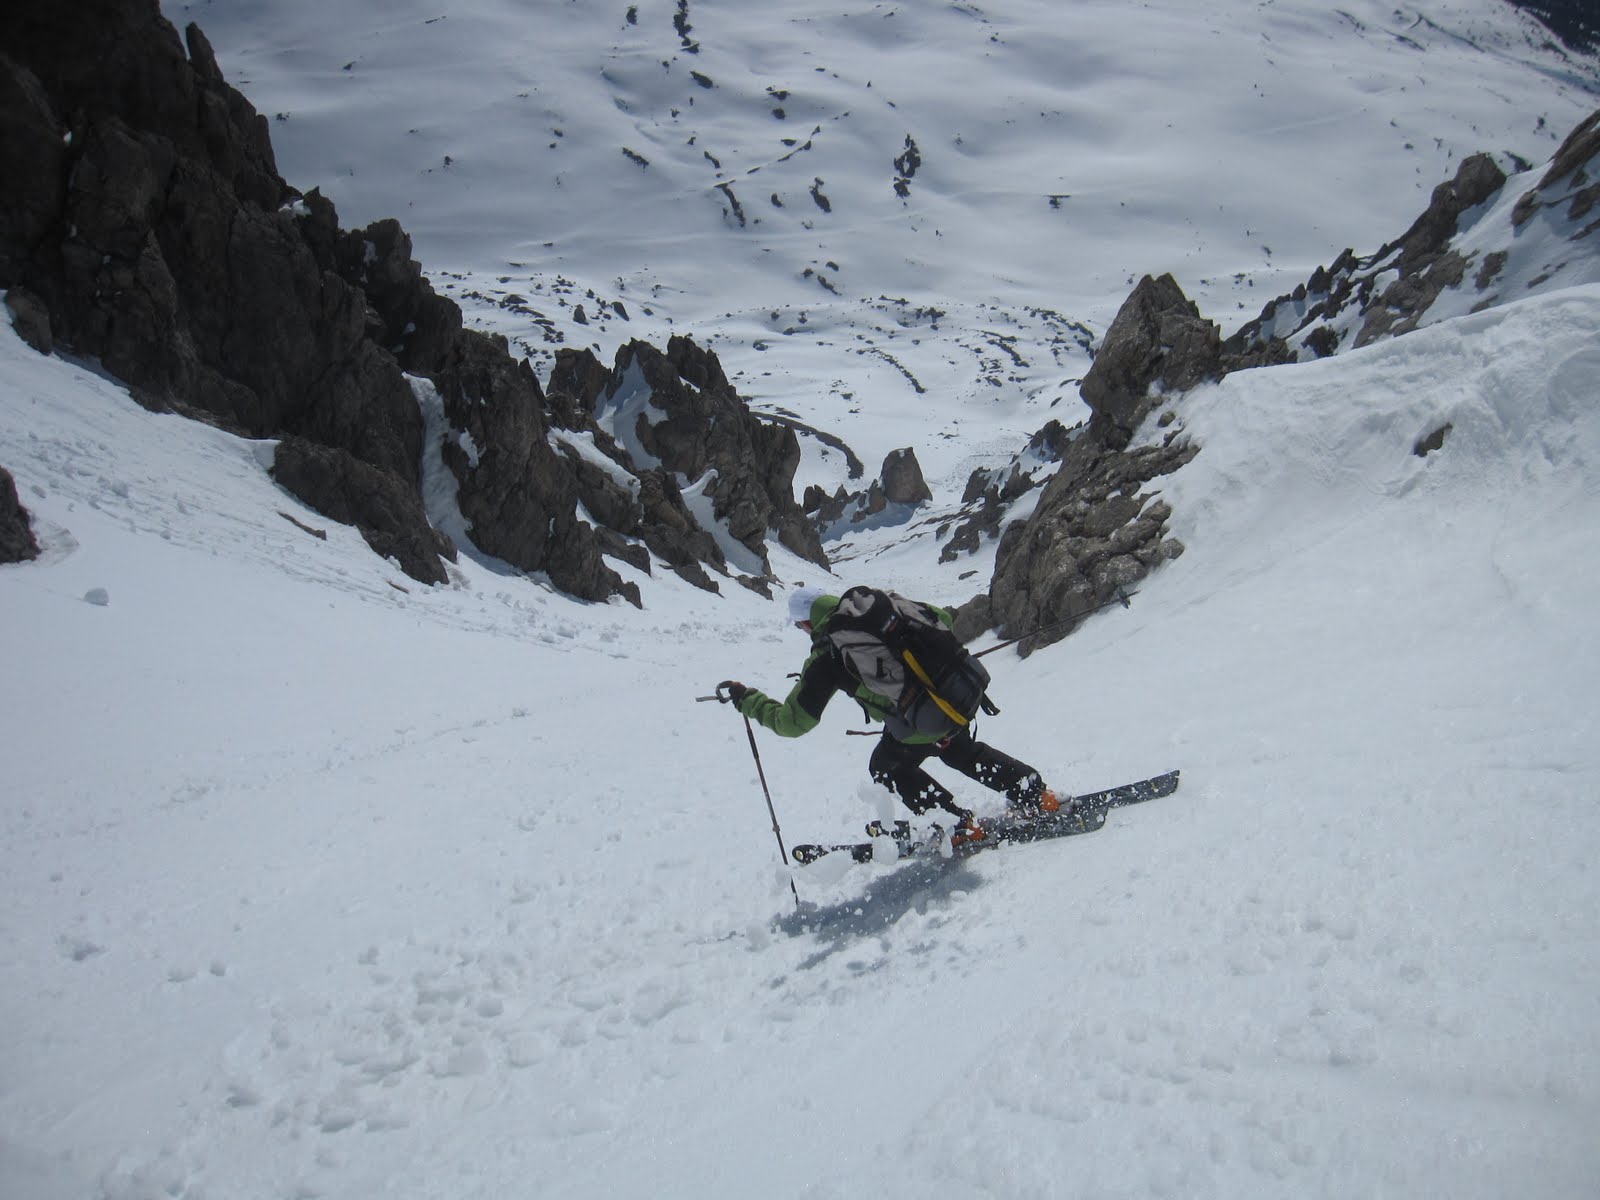 Ski de pente raide en vallée de la Clarée